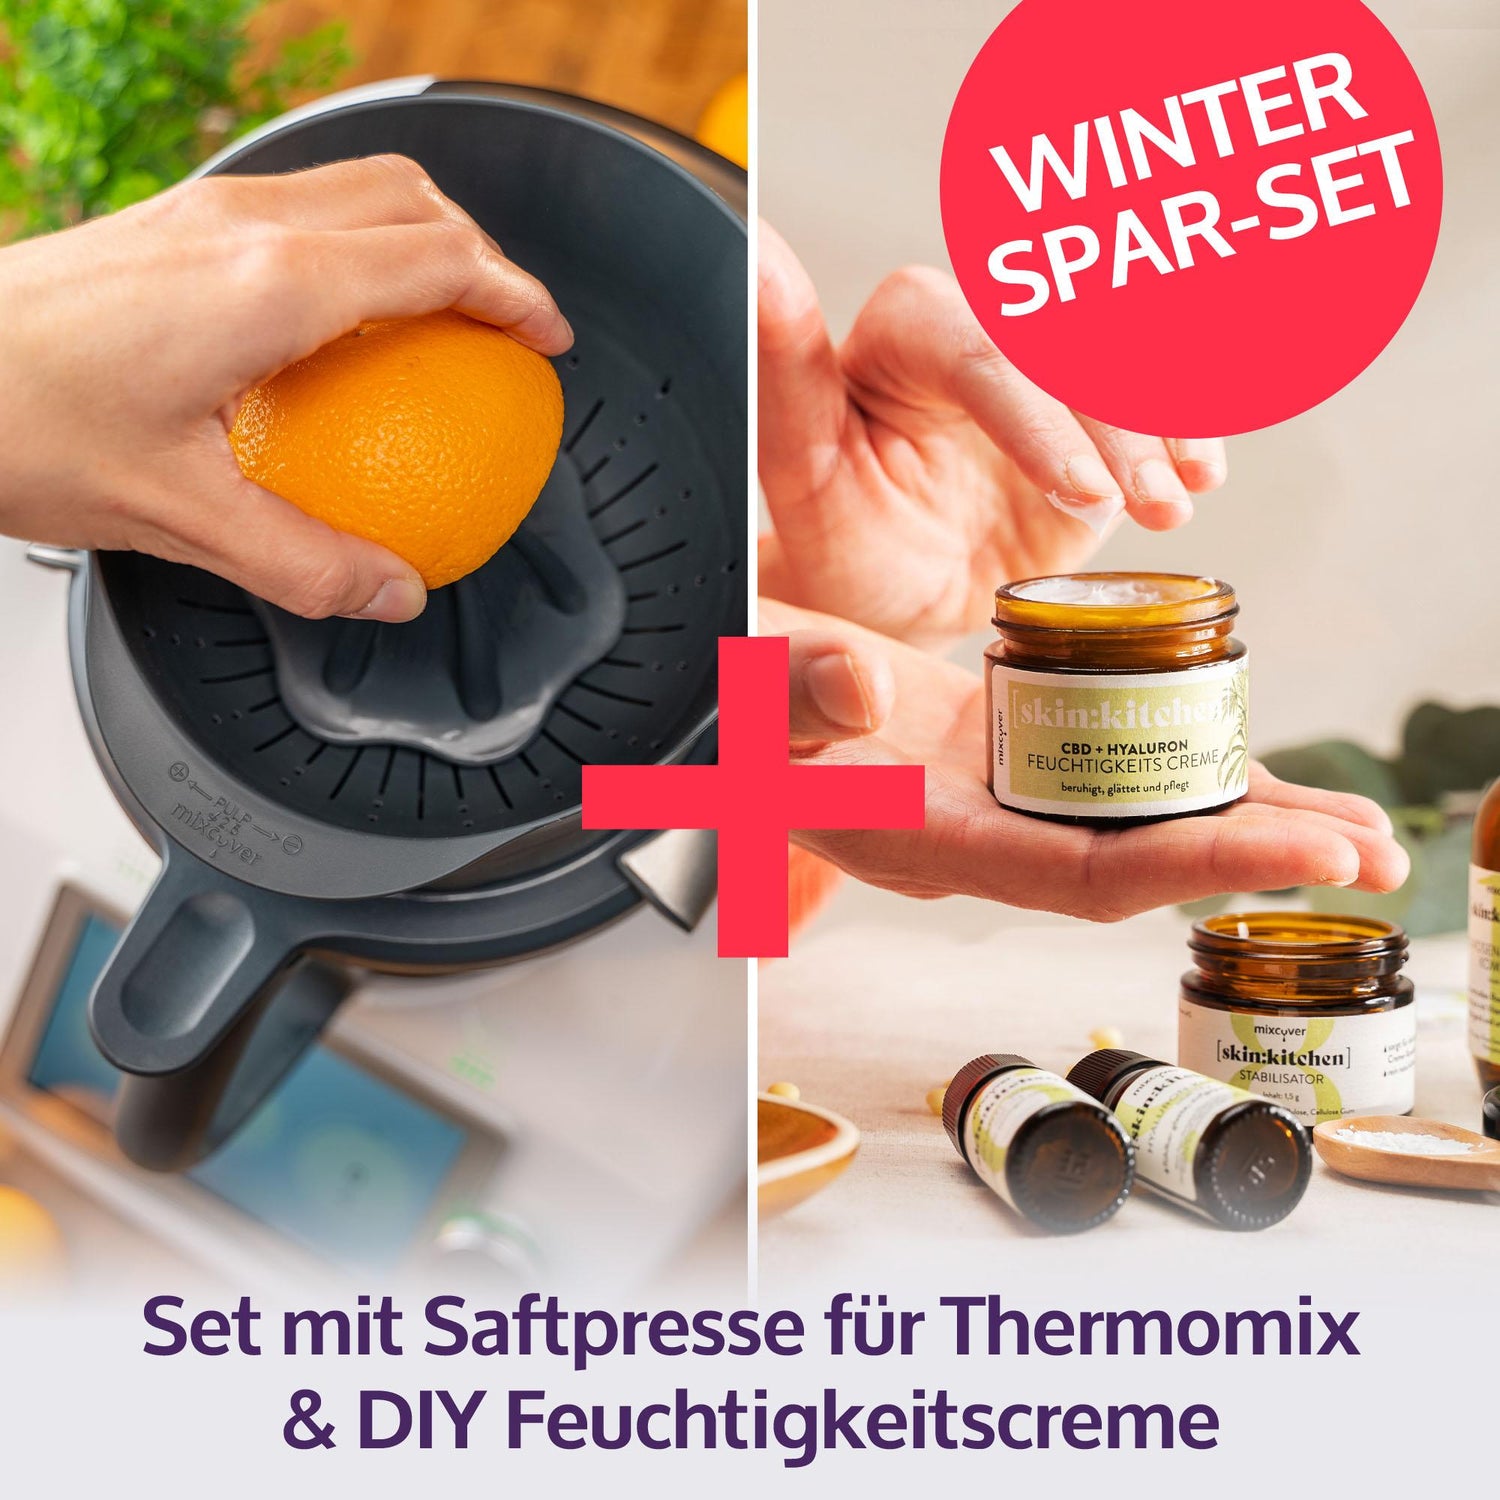 Vorwerk Thermomix TM6 Accessoires Livre de recettes - Sur